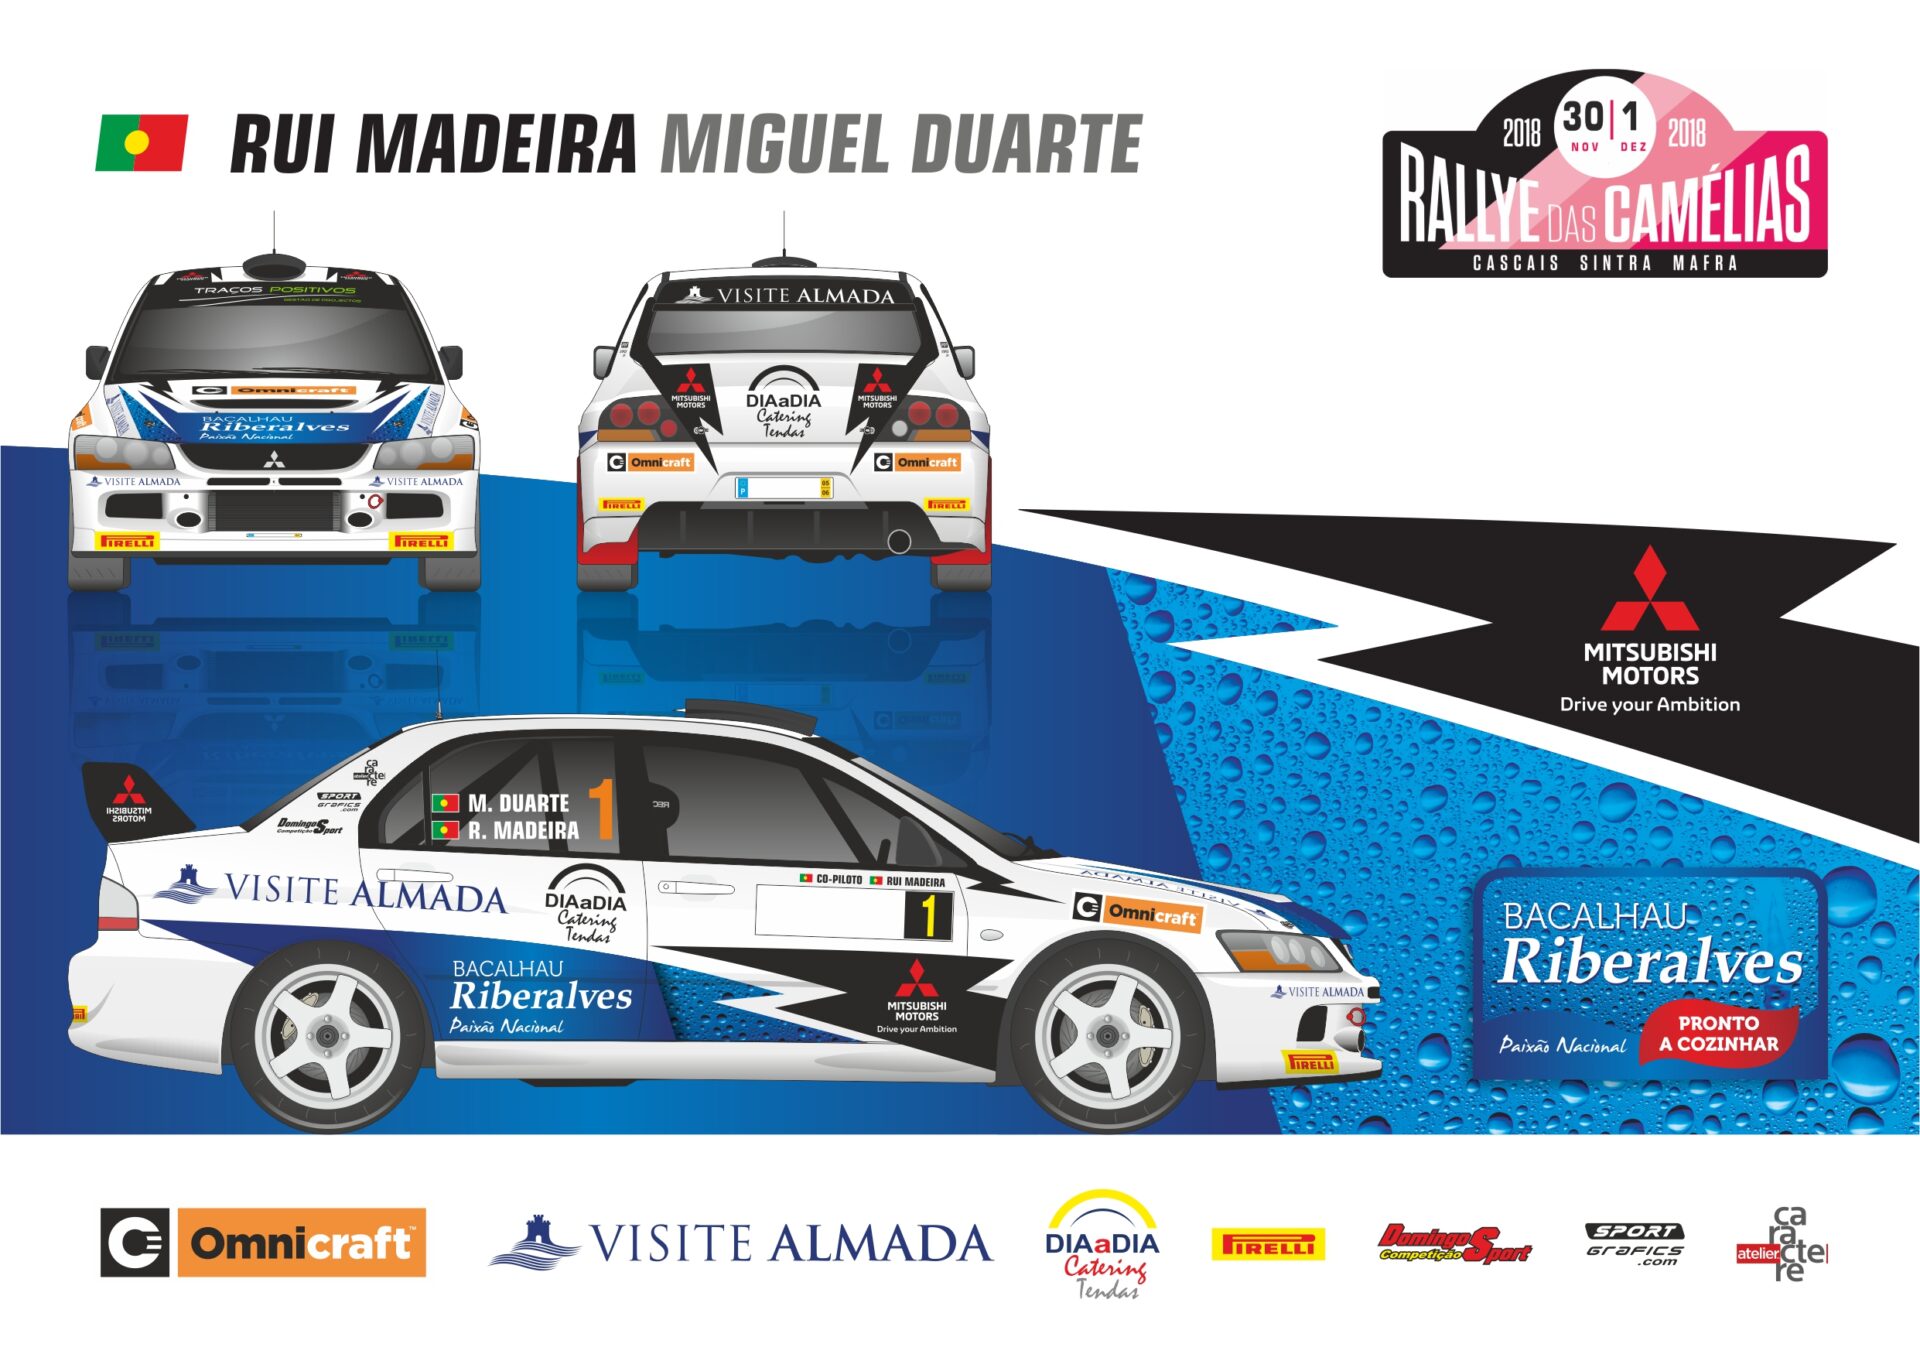 Rui Madeira no Rallye das Camélias para recordar bons velhos tempos!